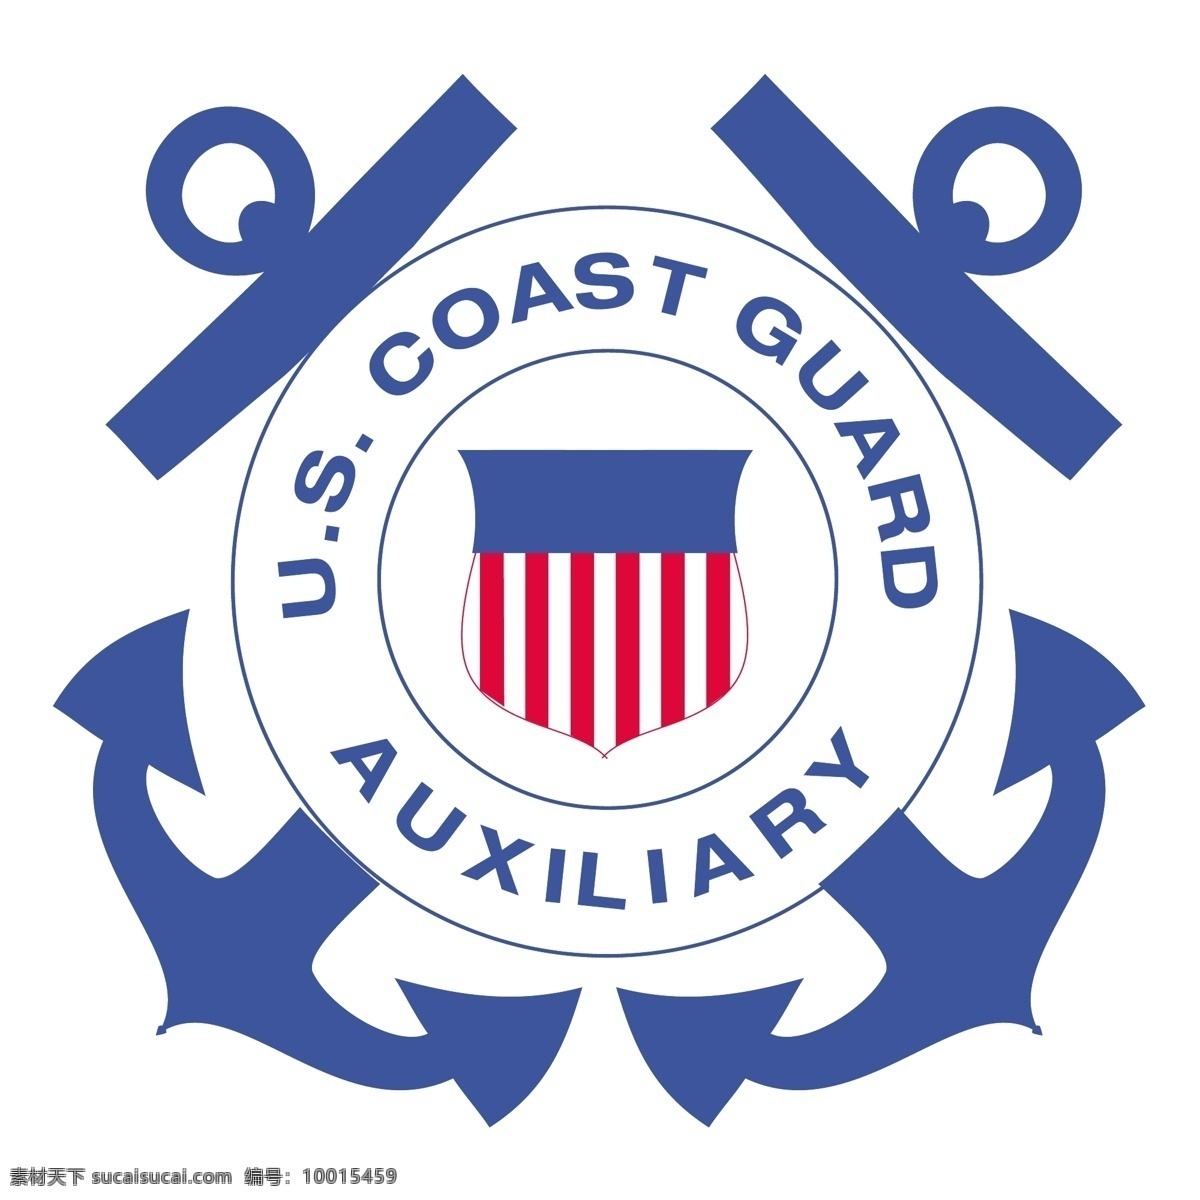 美国 海岸 警卫队 免费 标识 psd源文件 logo设计